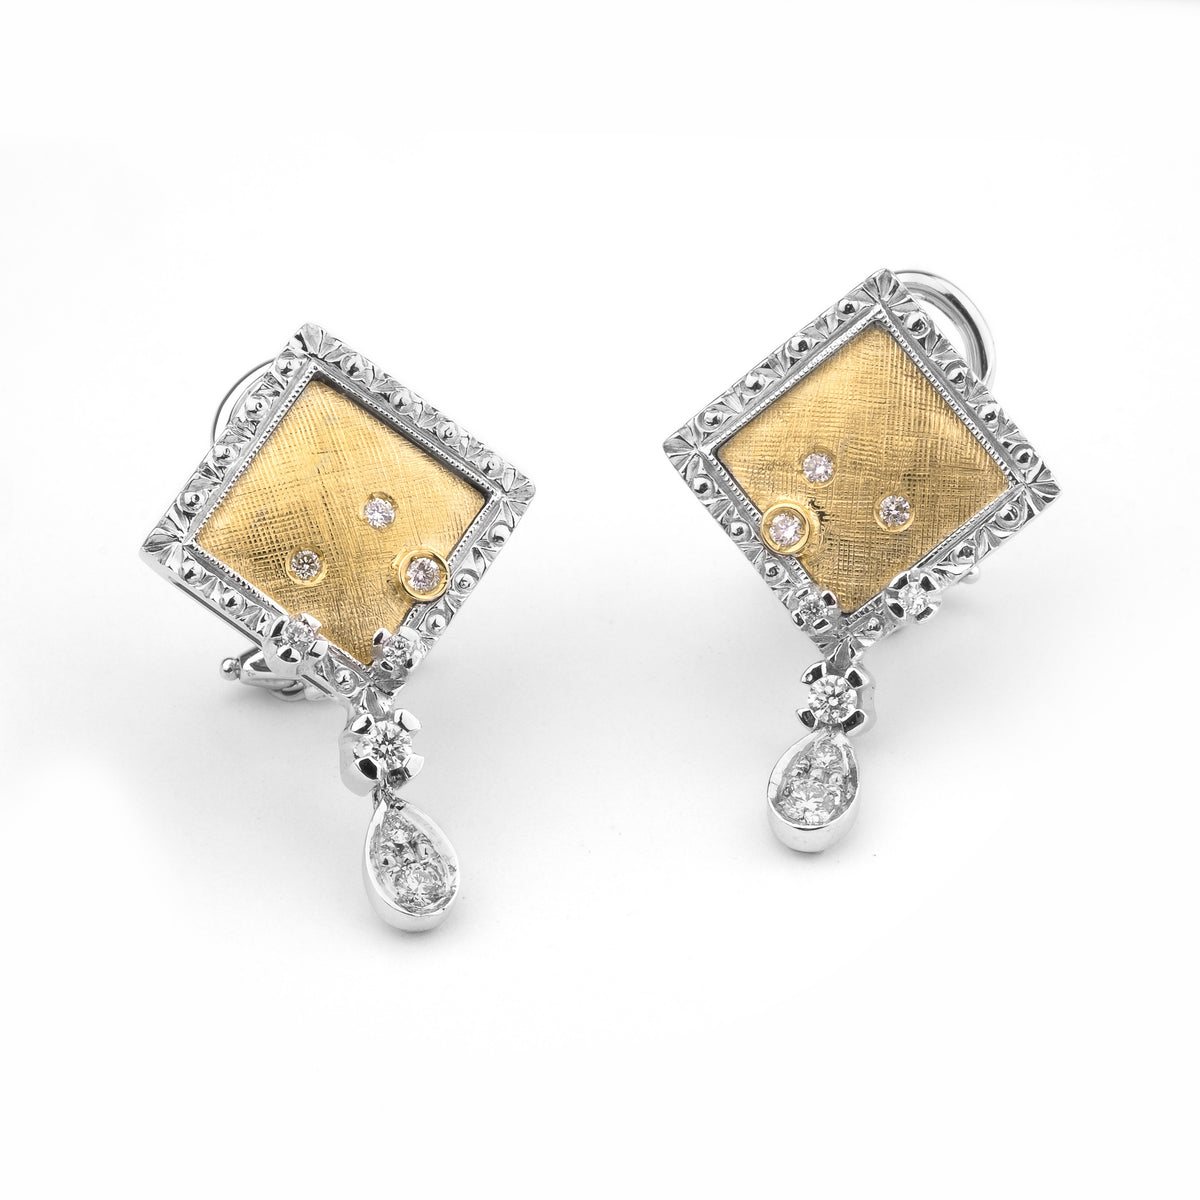 【新品爆買い】78862-26絶品Diamond 18K Earrings SPAIN New 6.6g イエローゴールド台